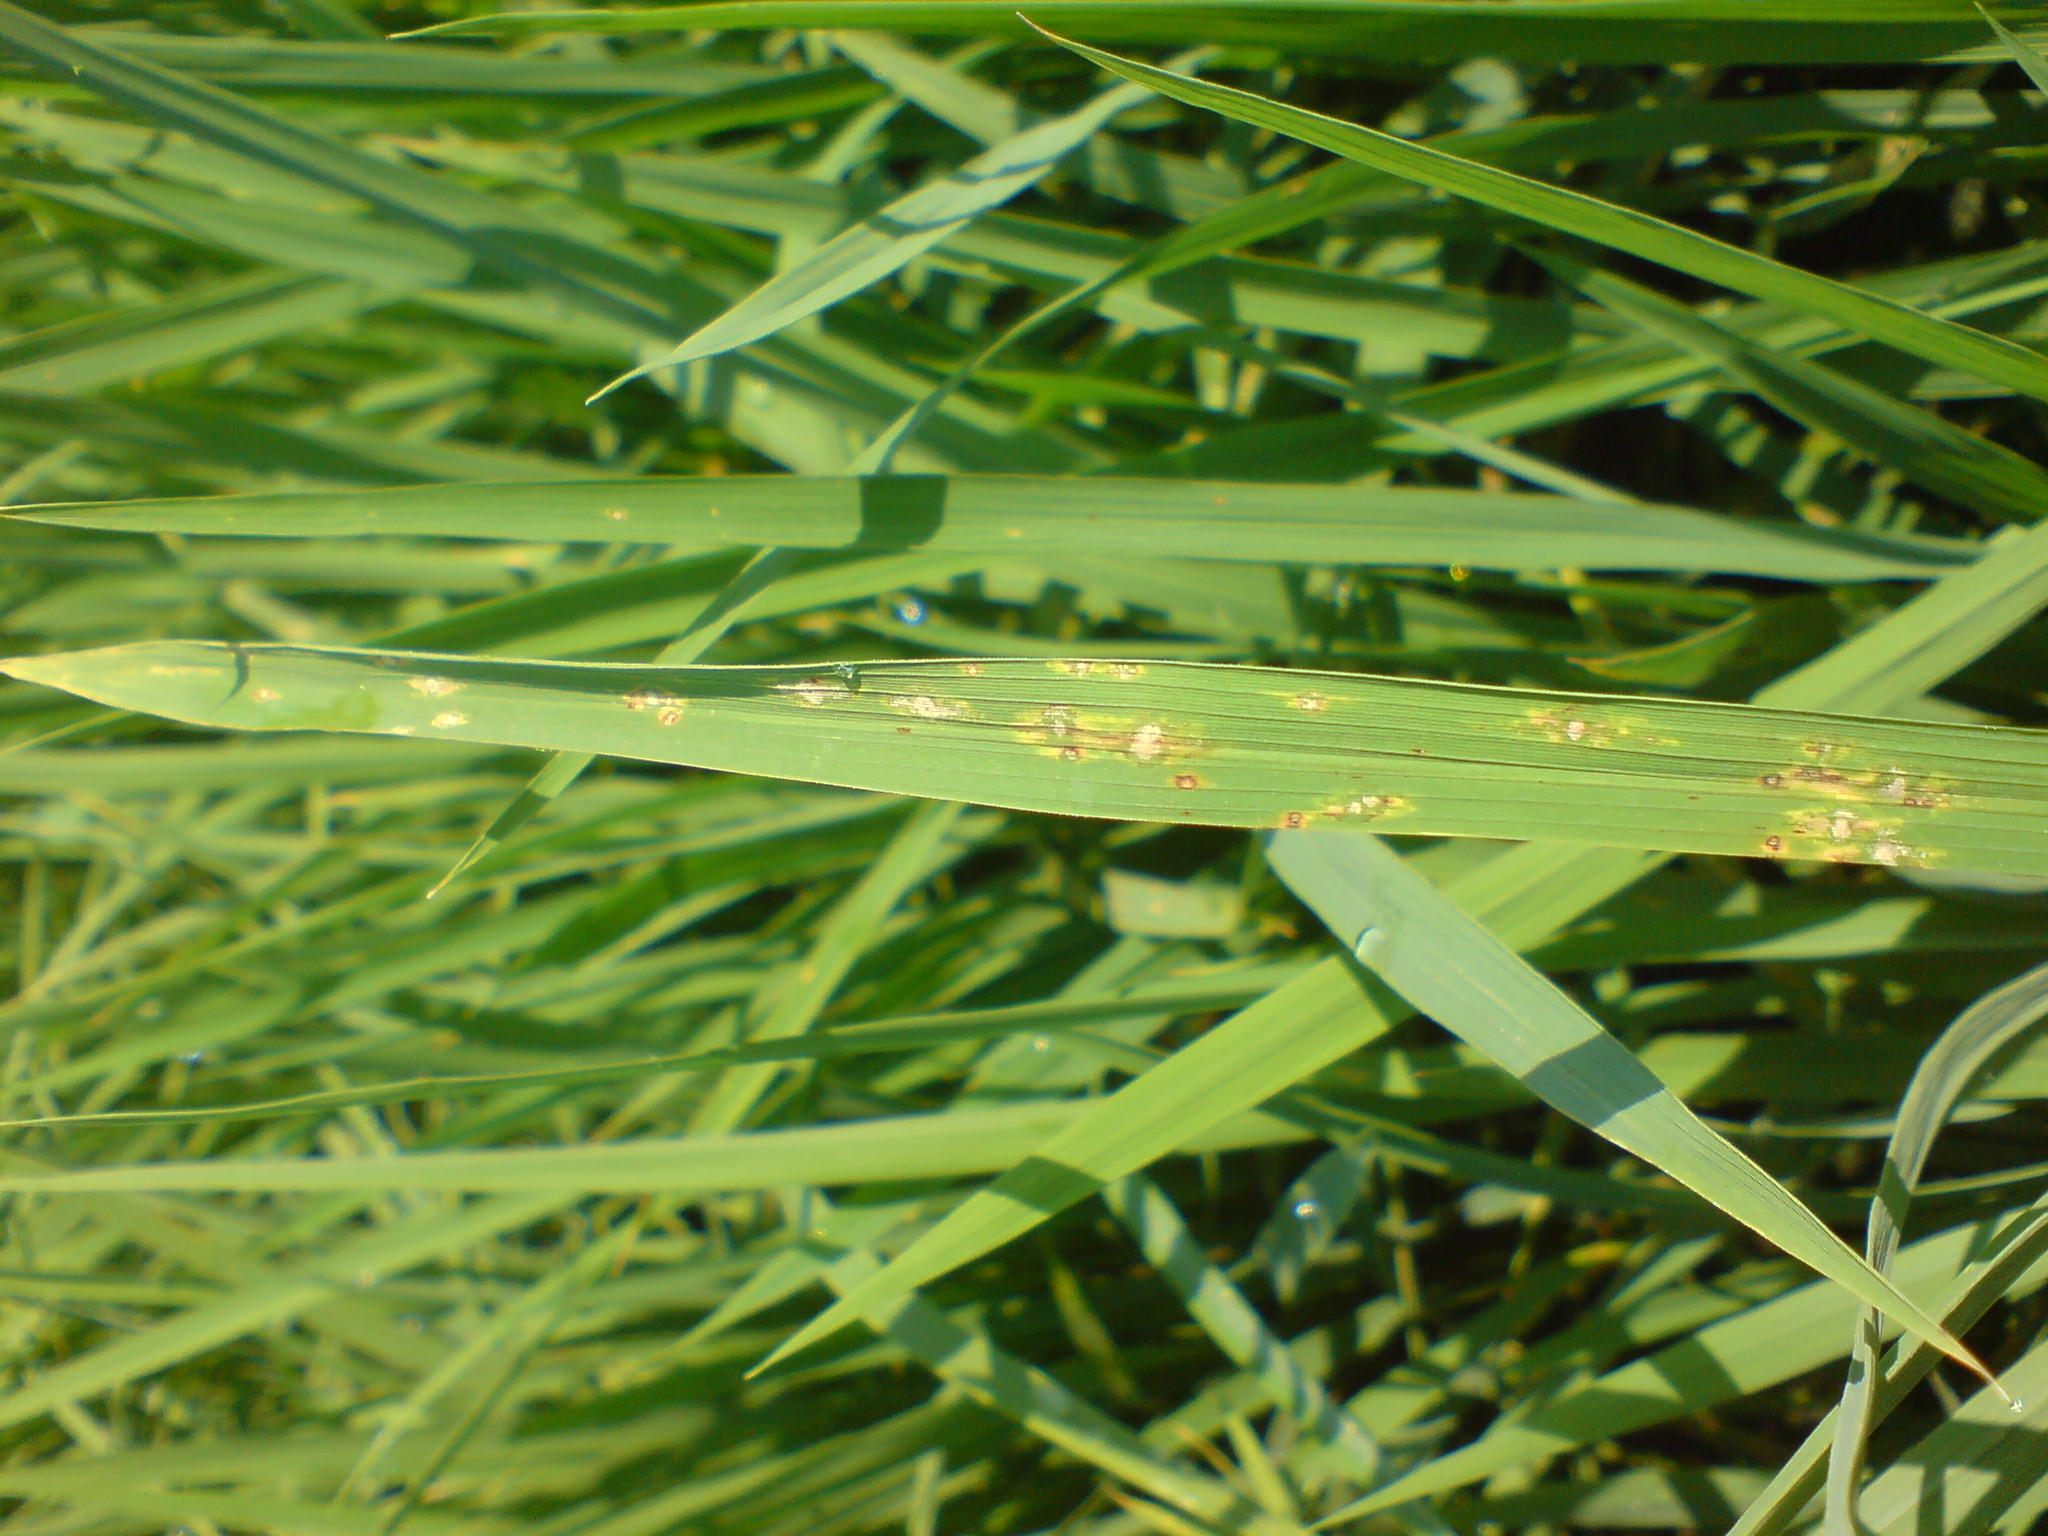 水稻葉稻熱病感染型病斑